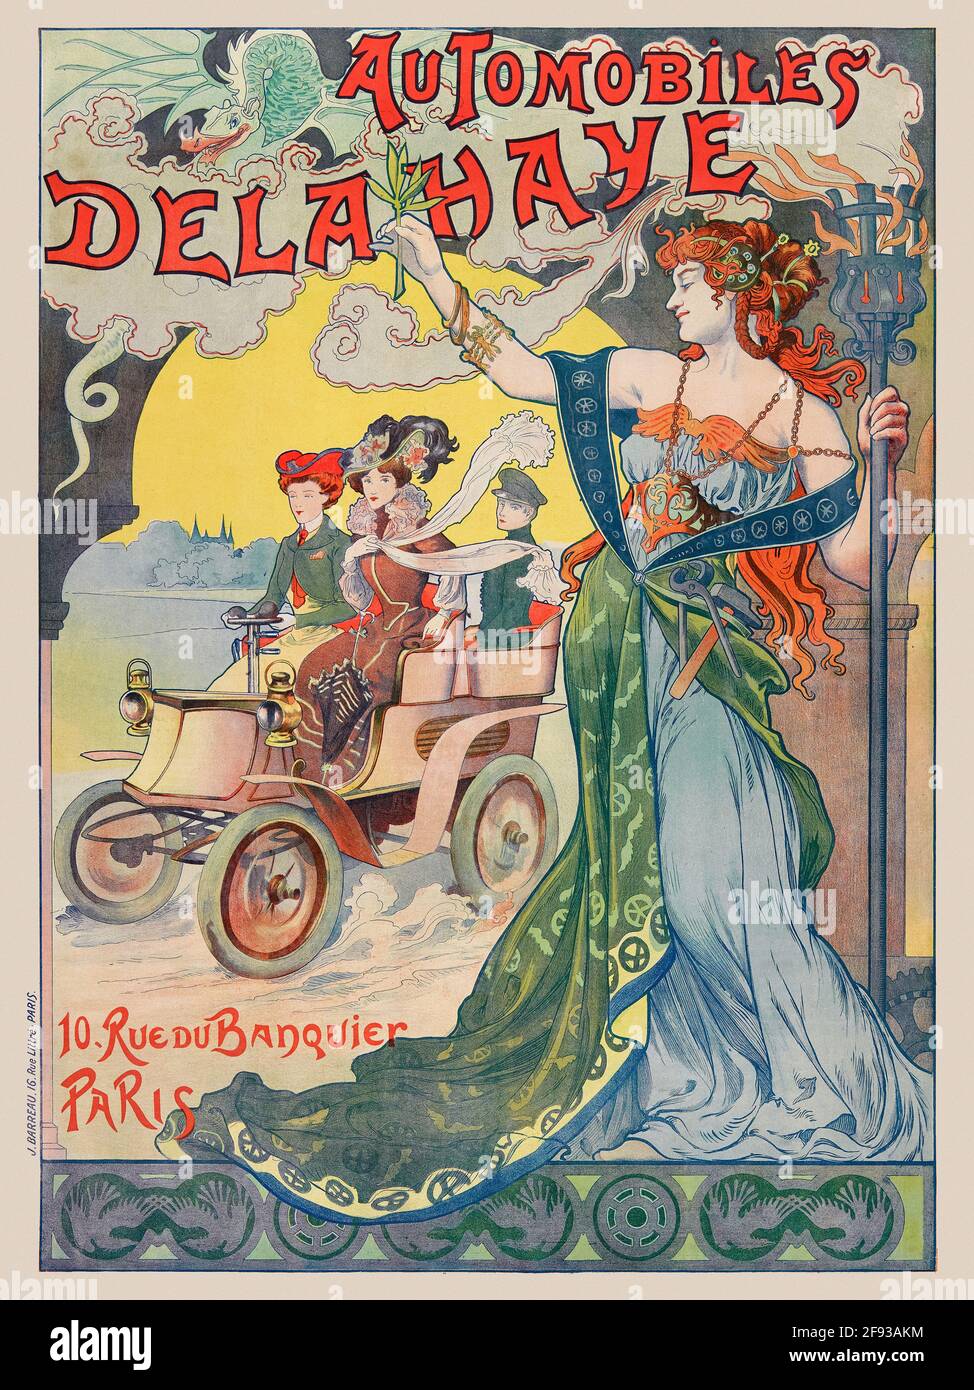 Póster publicitario de época restaurado. Automóviles Delahaye 10 Rue du Banquier París. Artista desconocido. Cartel publicado en 1898 en Francia. Foto de stock